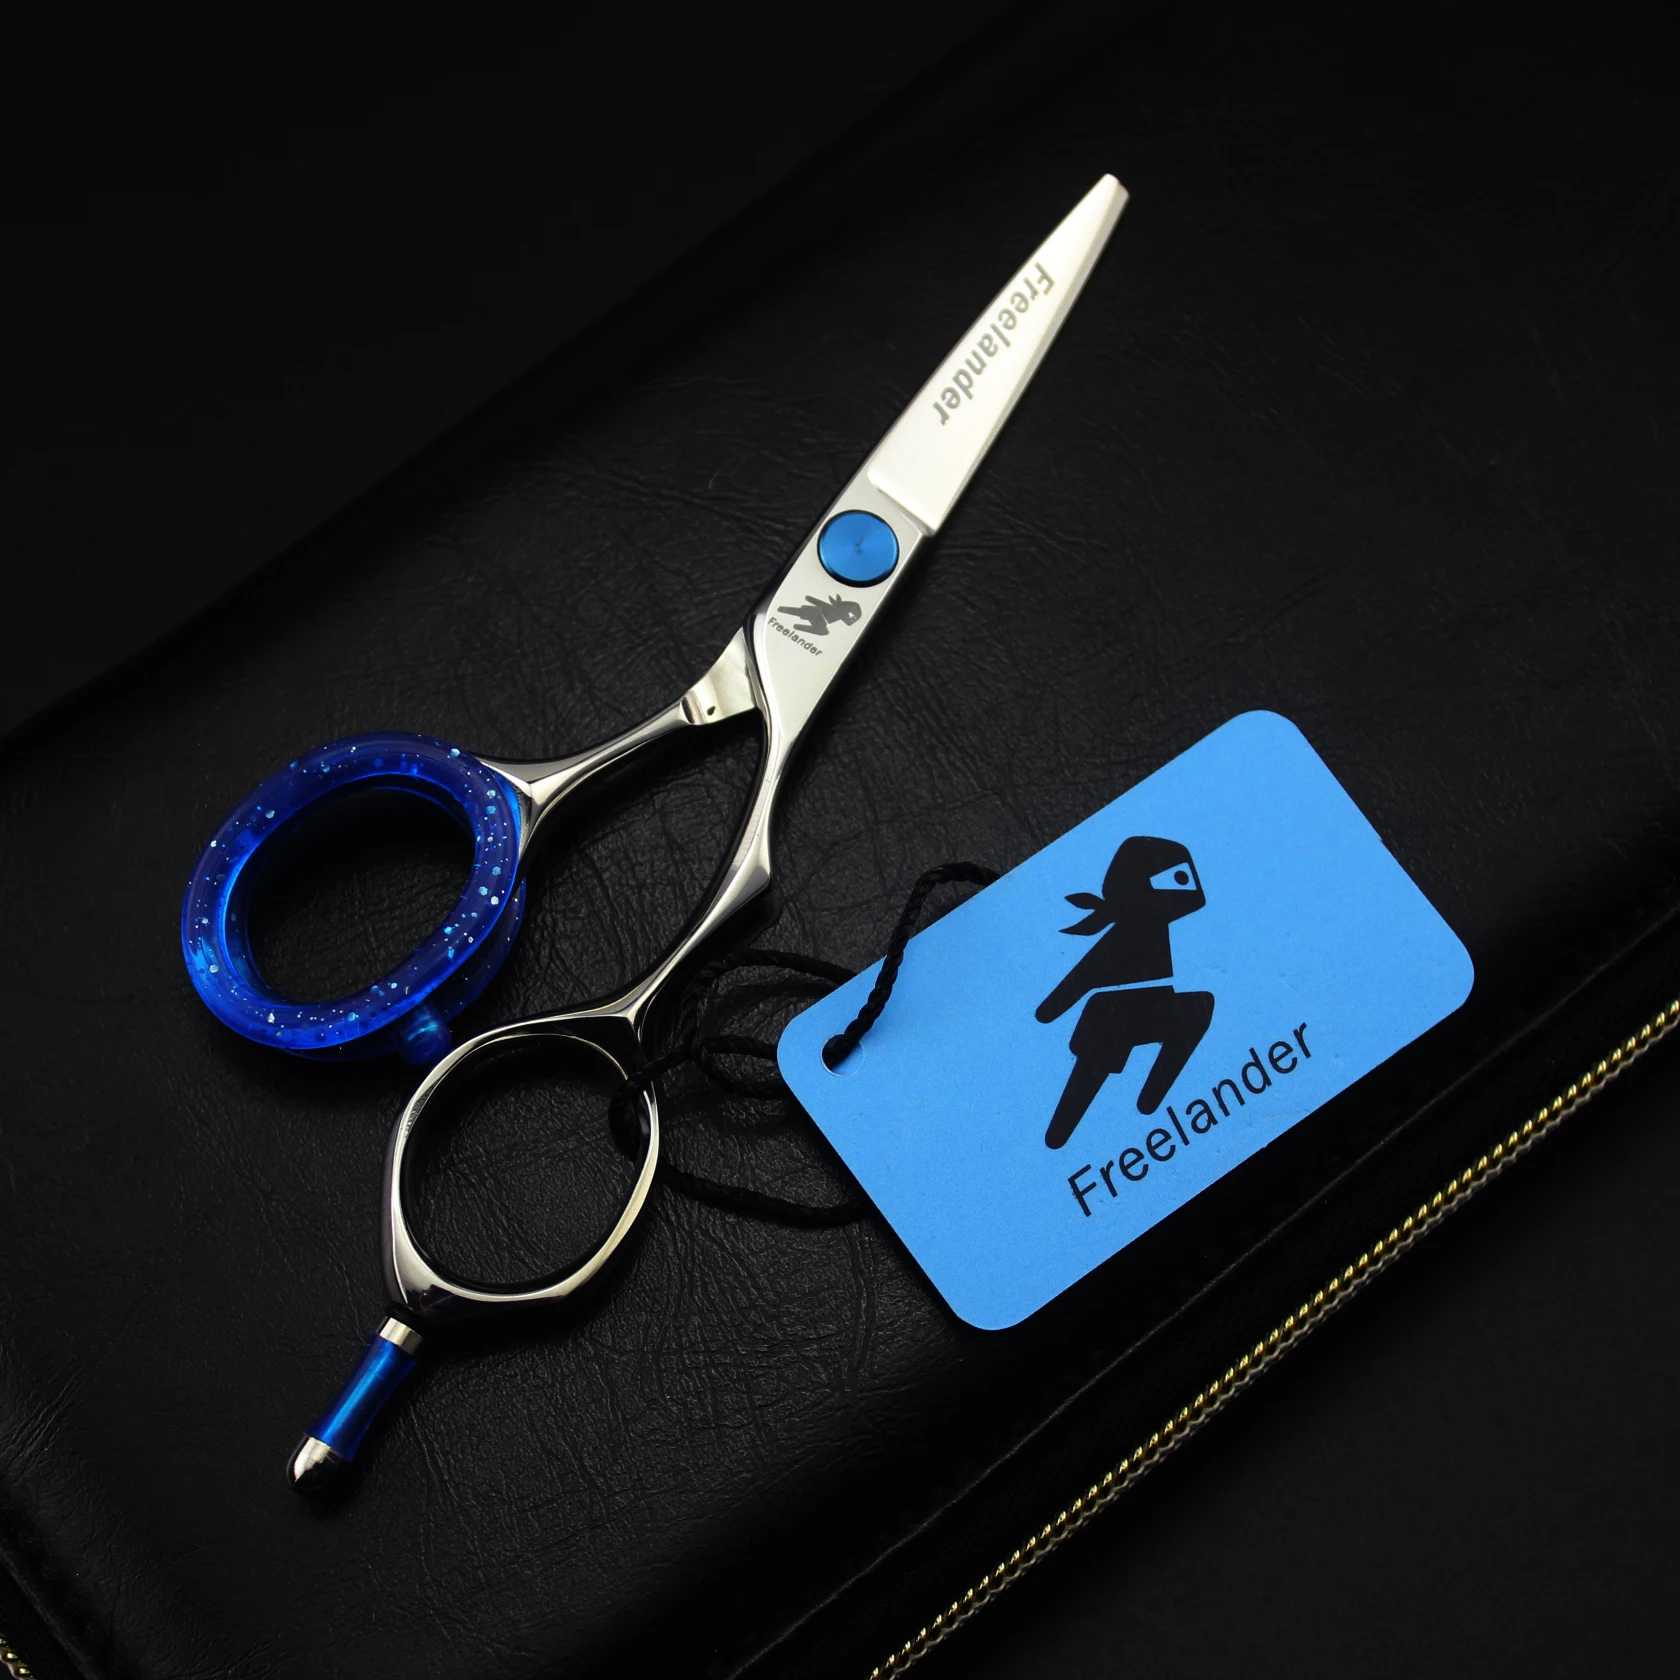 4.0in. Профессиональные Парикмахерские ножницы Freelander, набор ножниц для стрижки волос, парикмахерские ножницы высокого качества, салонные ножницы серебристого цвета (1600078340451)